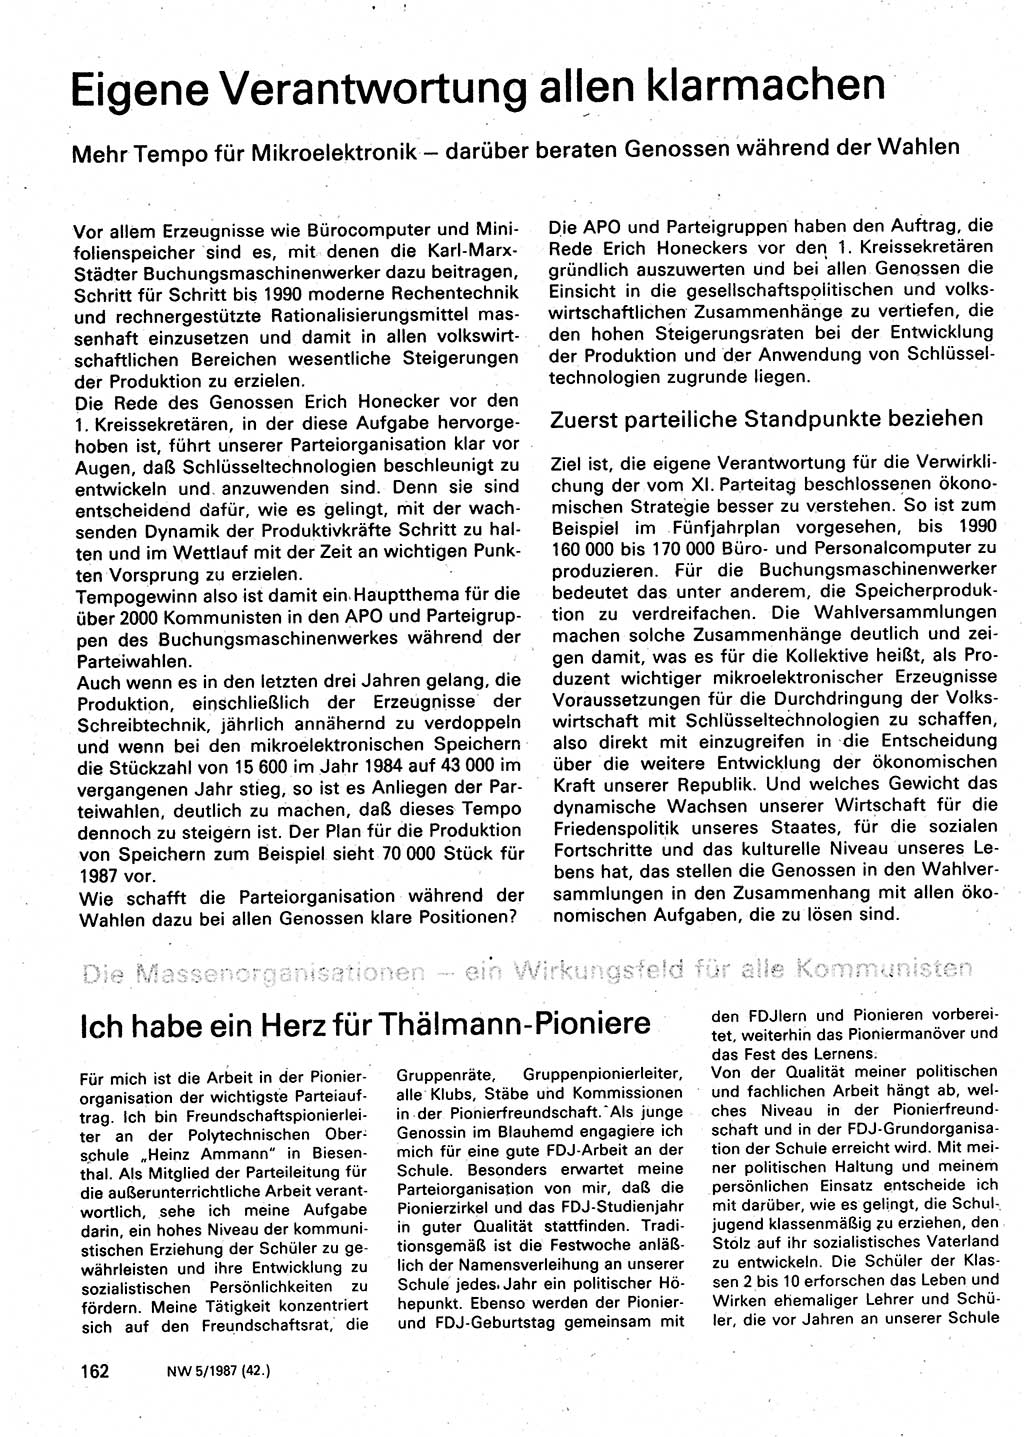 Neuer Weg (NW), Organ des Zentralkomitees (ZK) der SED (Sozialistische Einheitspartei Deutschlands) für Fragen des Parteilebens, 42. Jahrgang [Deutsche Demokratische Republik (DDR)] 1987, Seite 162 (NW ZK SED DDR 1987, S. 162)